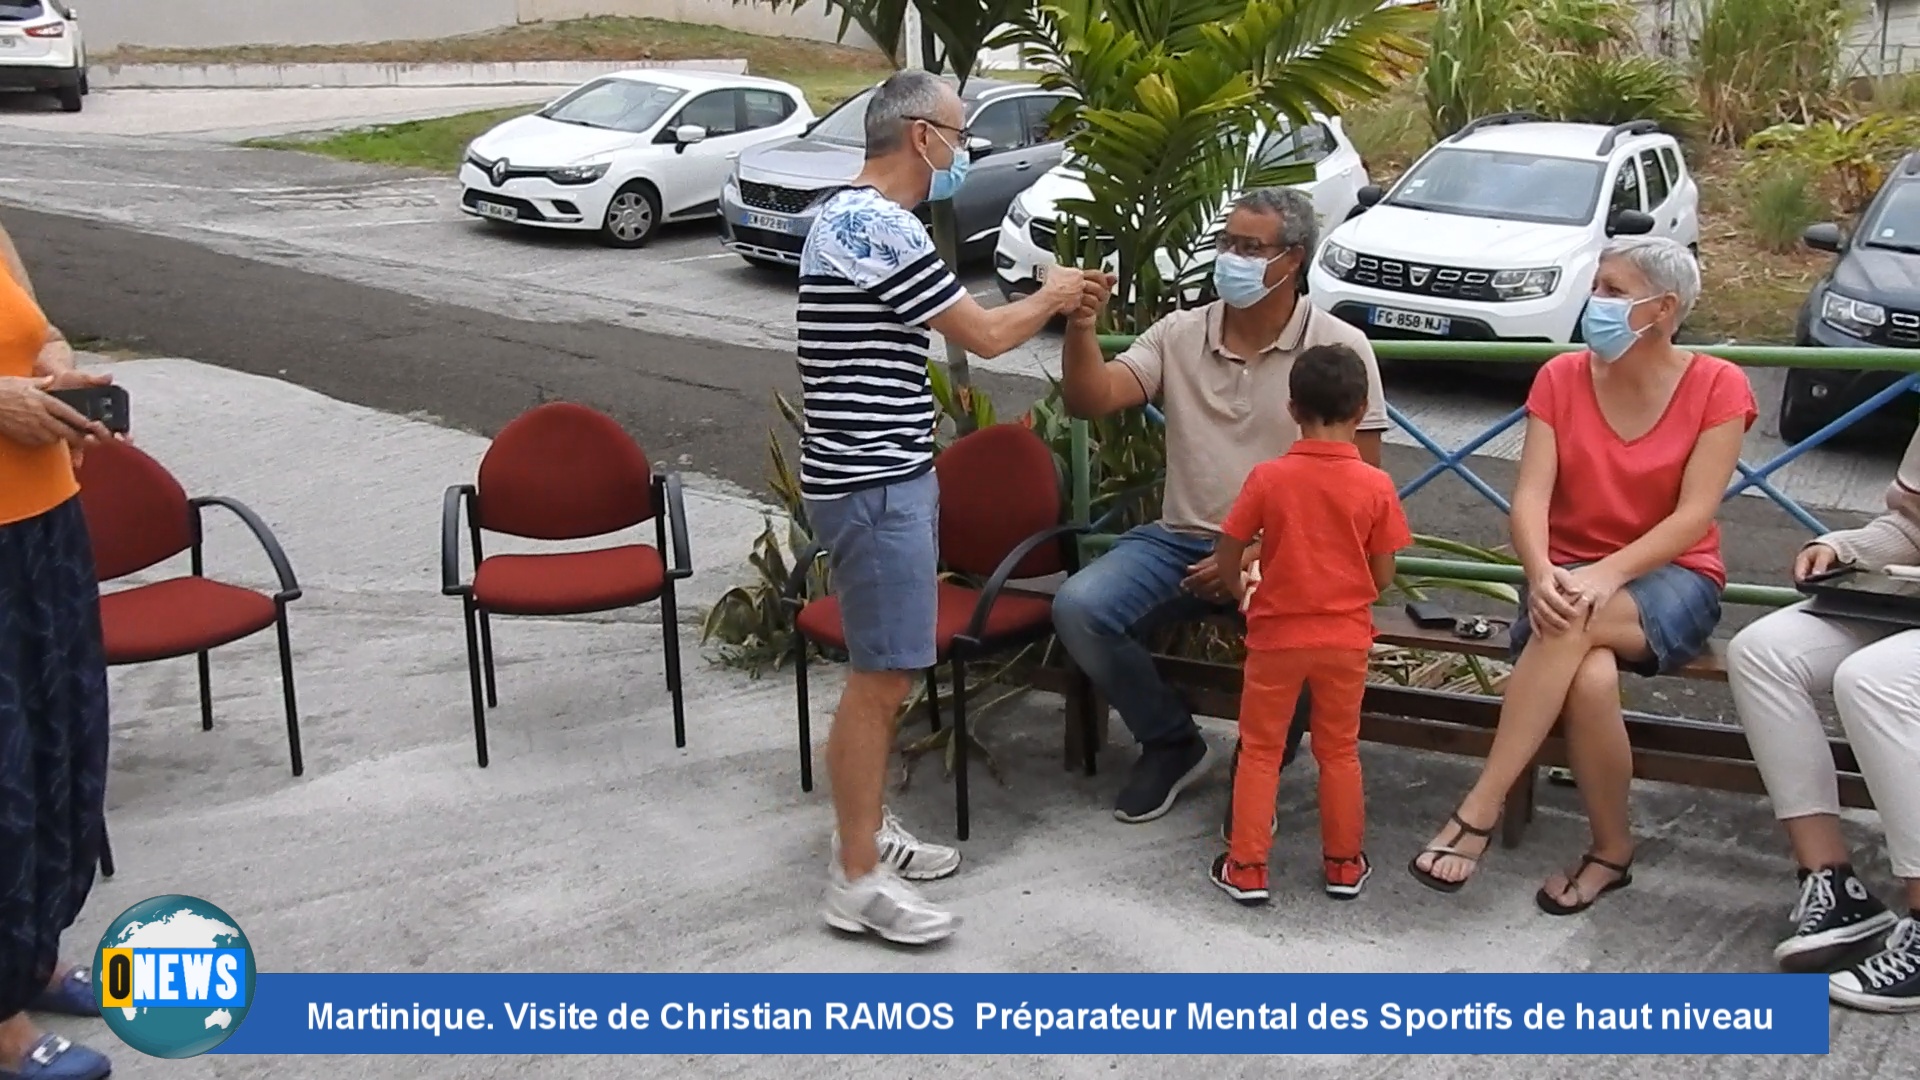 [Vidéo] Onews Martinique. Visite de Christian RAMOS Préparateur Mental des Sportifs de haut niveau